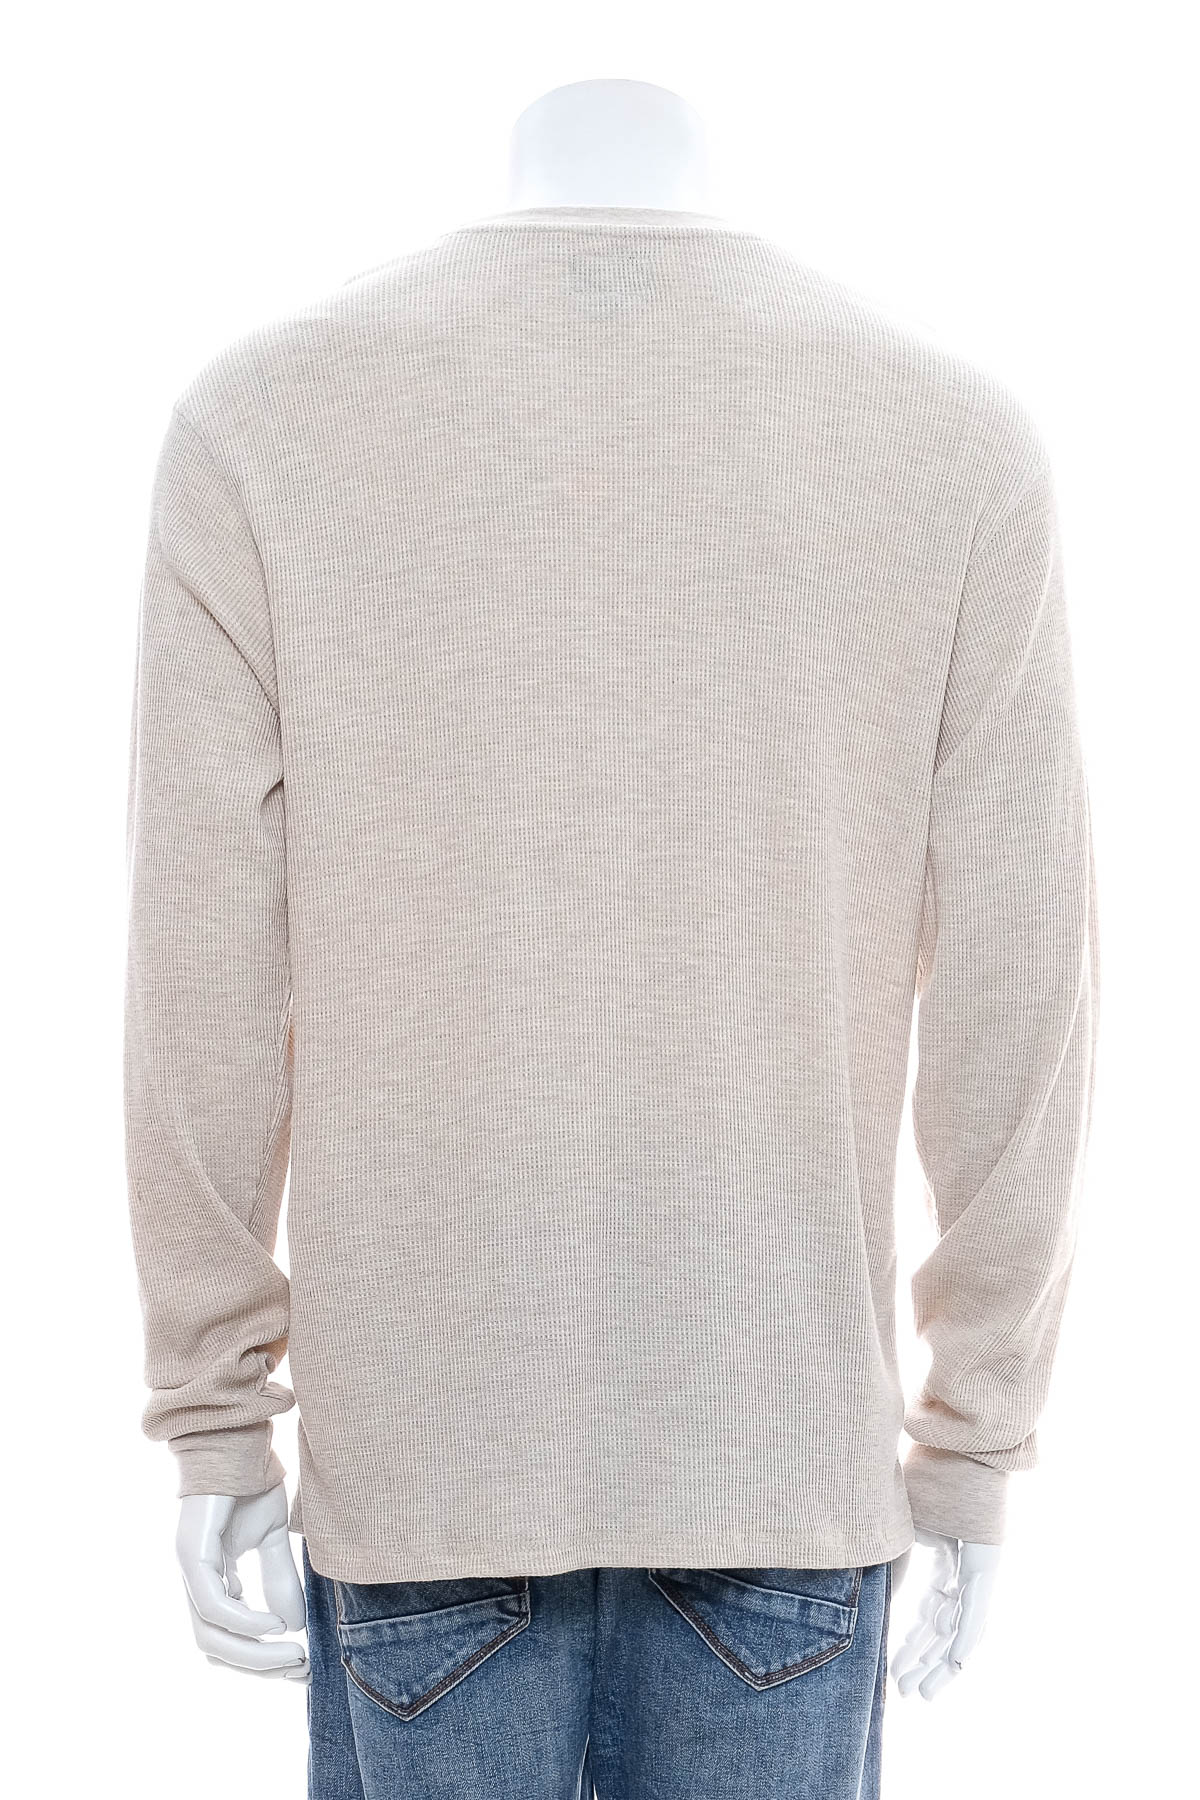 Men's sweater - Billabong - 1